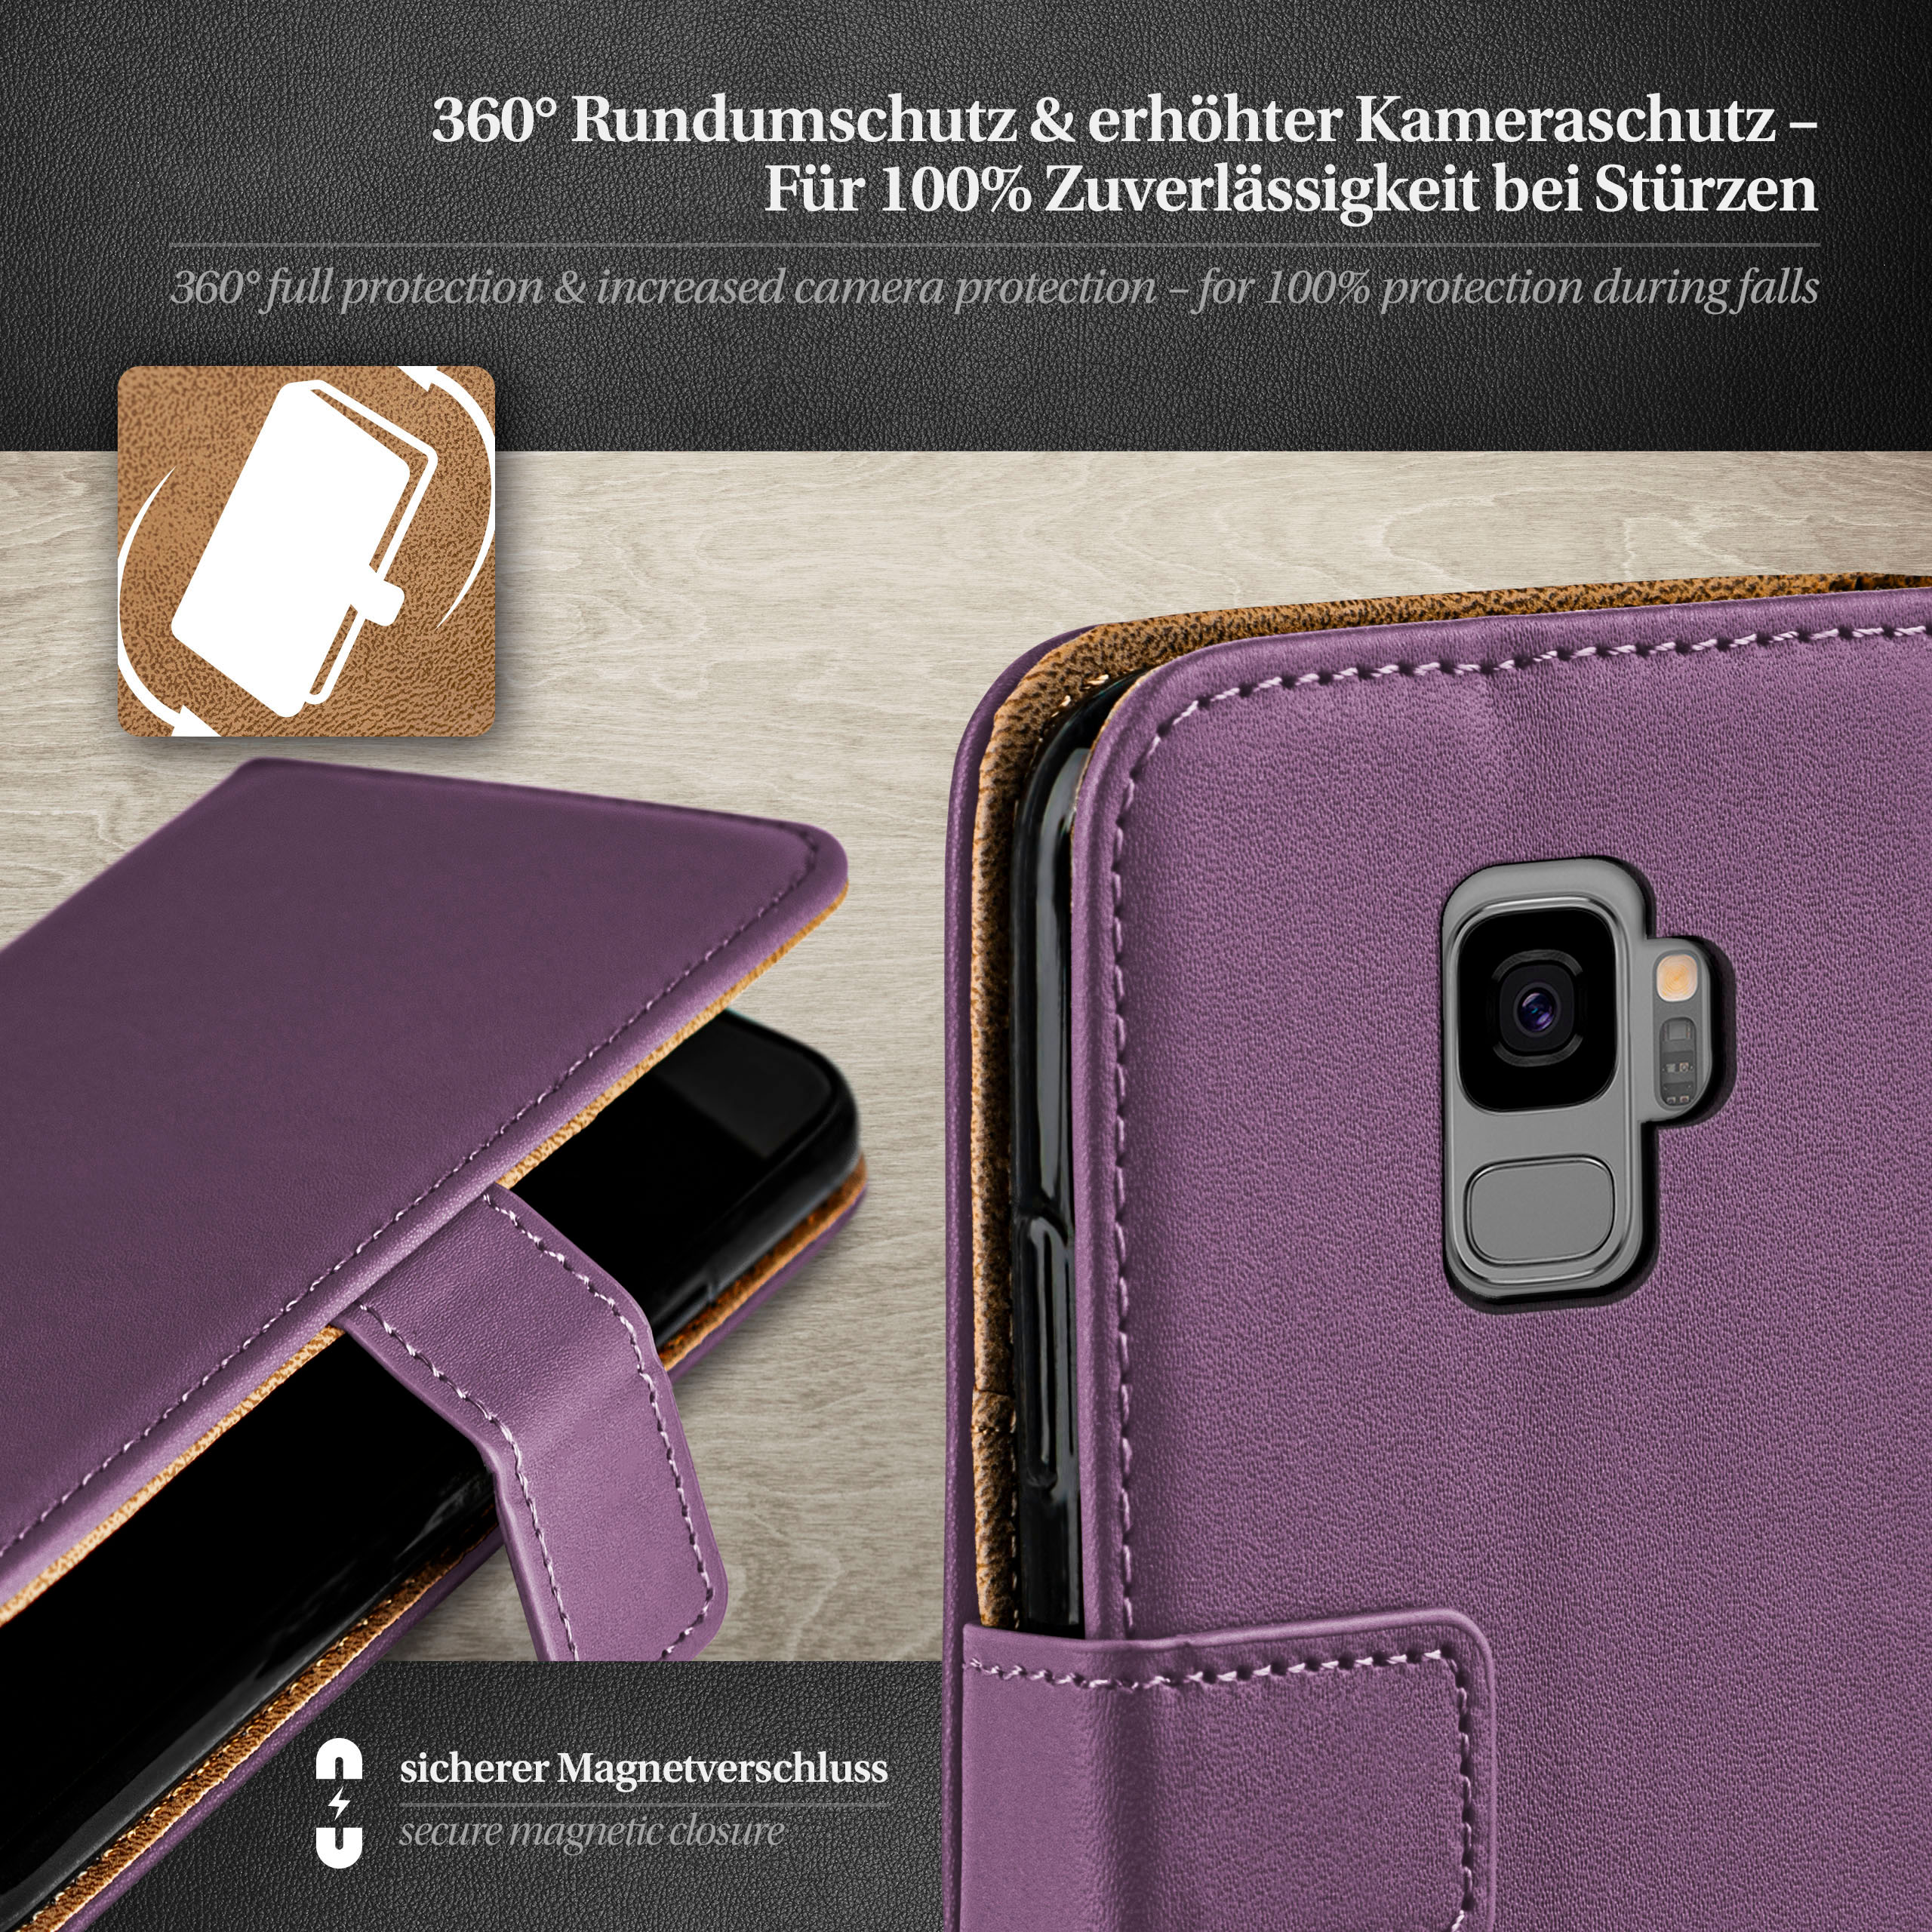 MOEX Galaxy Case, Bookcover, Samsung, Book S9, Indigo-Violet